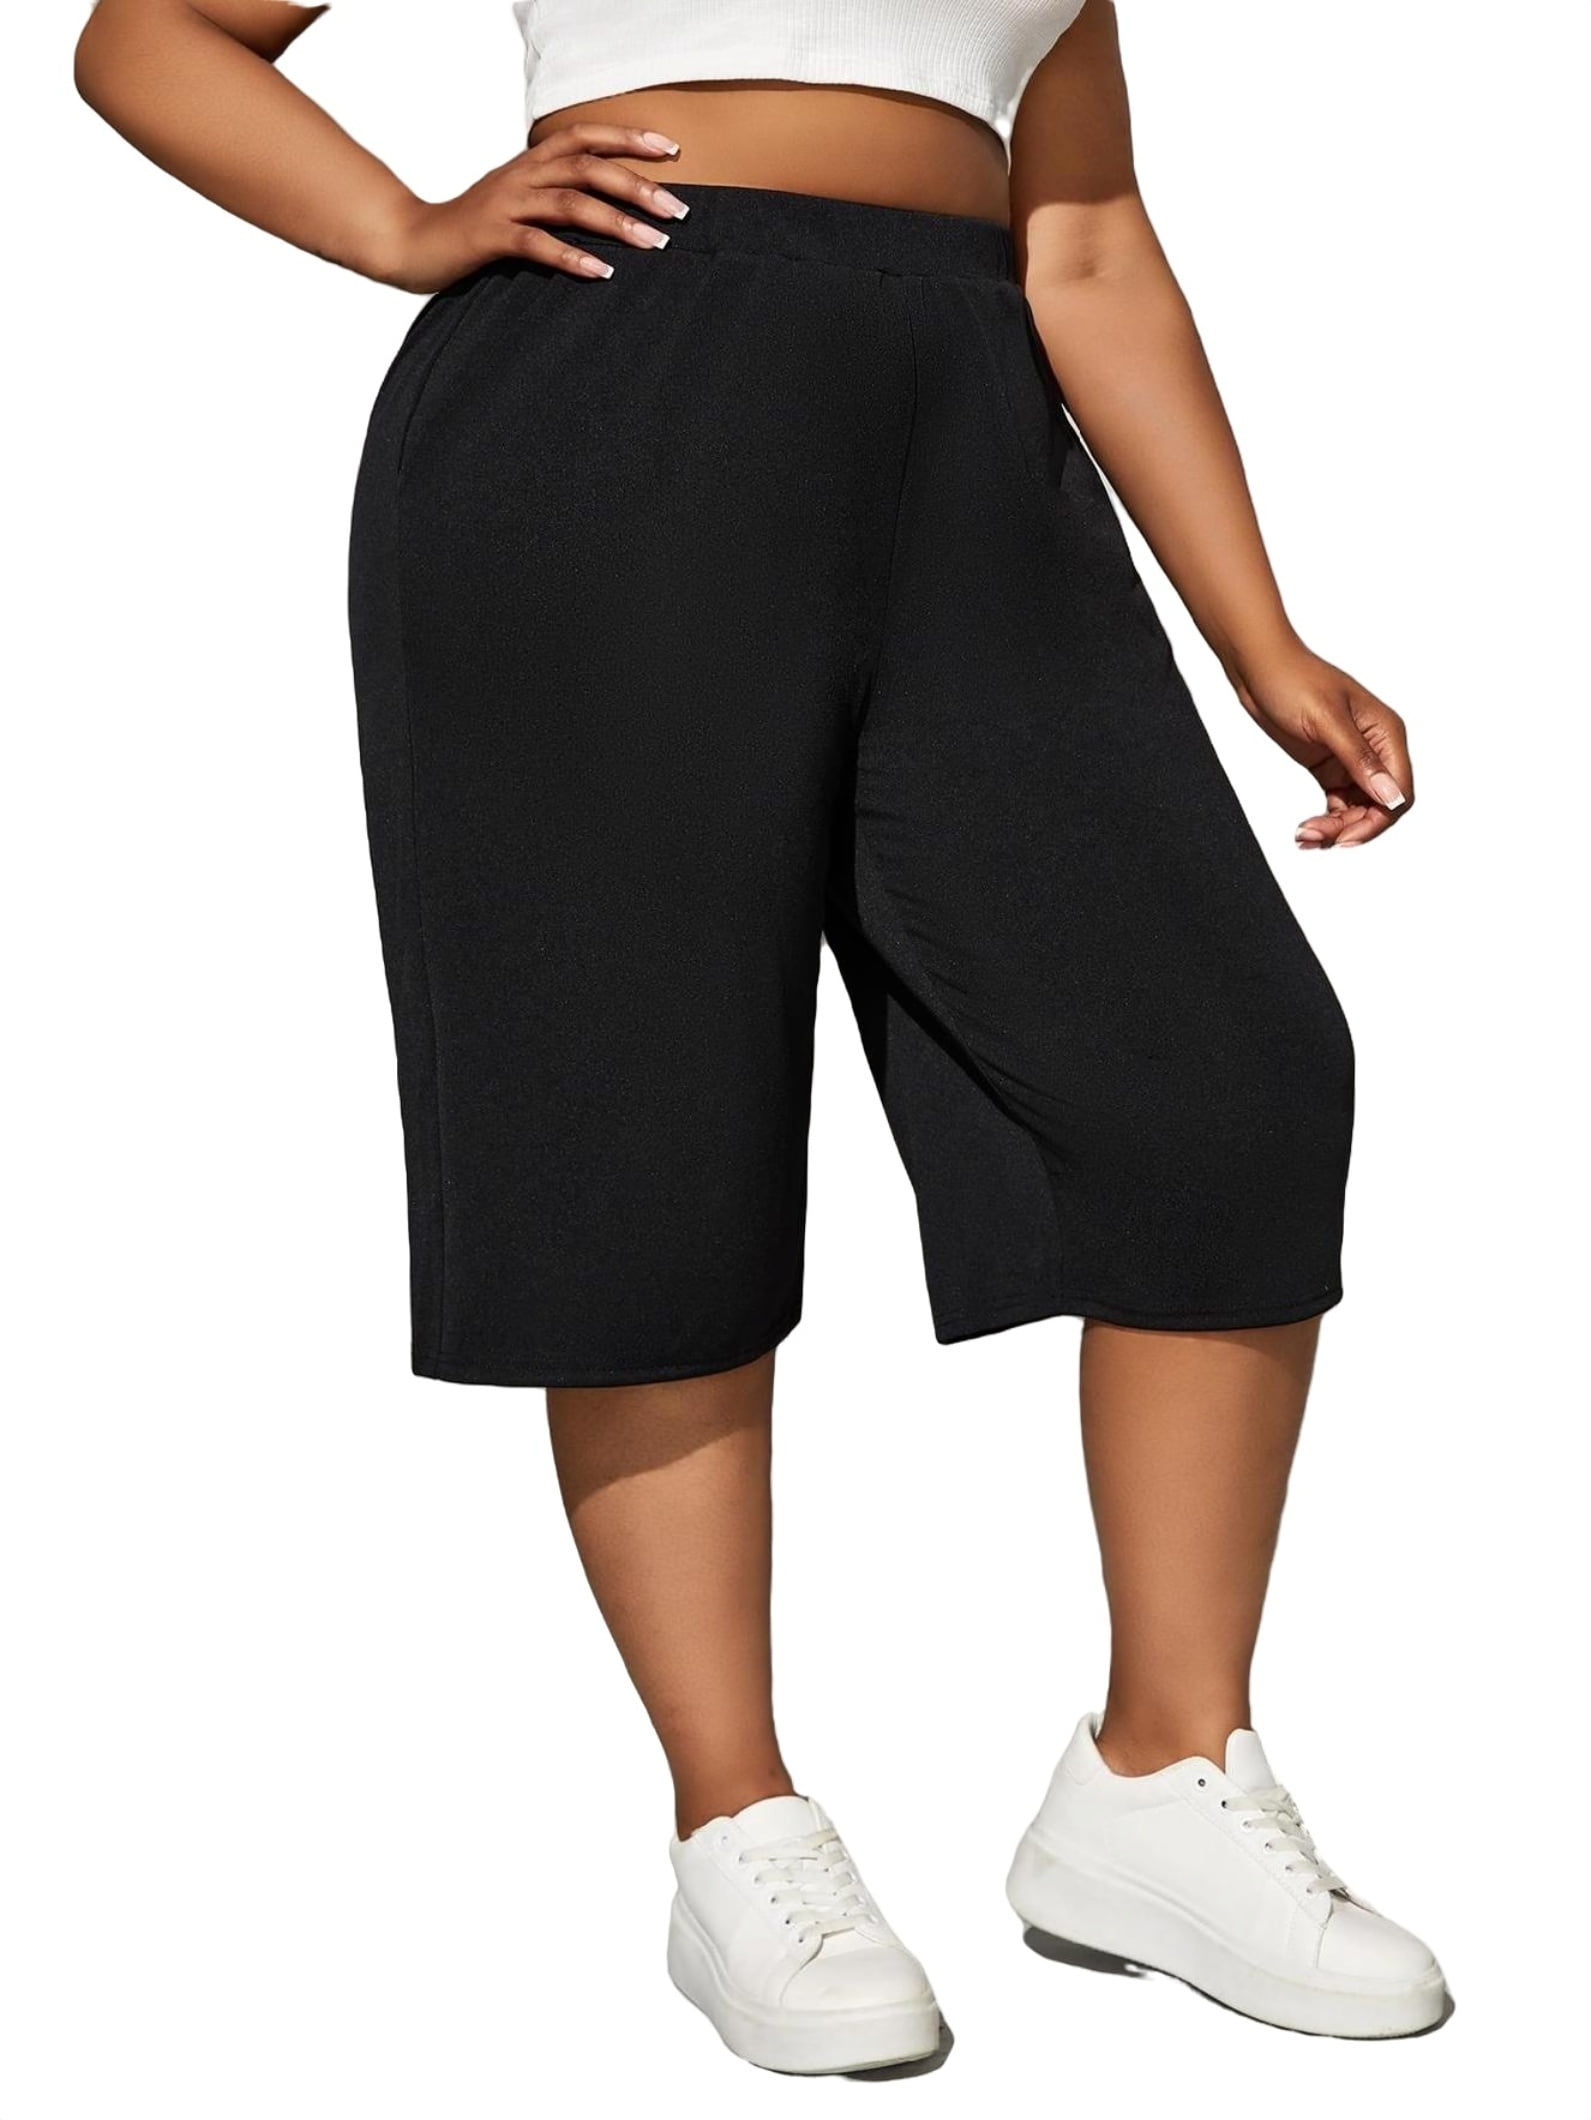 Women's Casual Plain Wide Leg Black Capris Plus Size Pants 3XL (18)